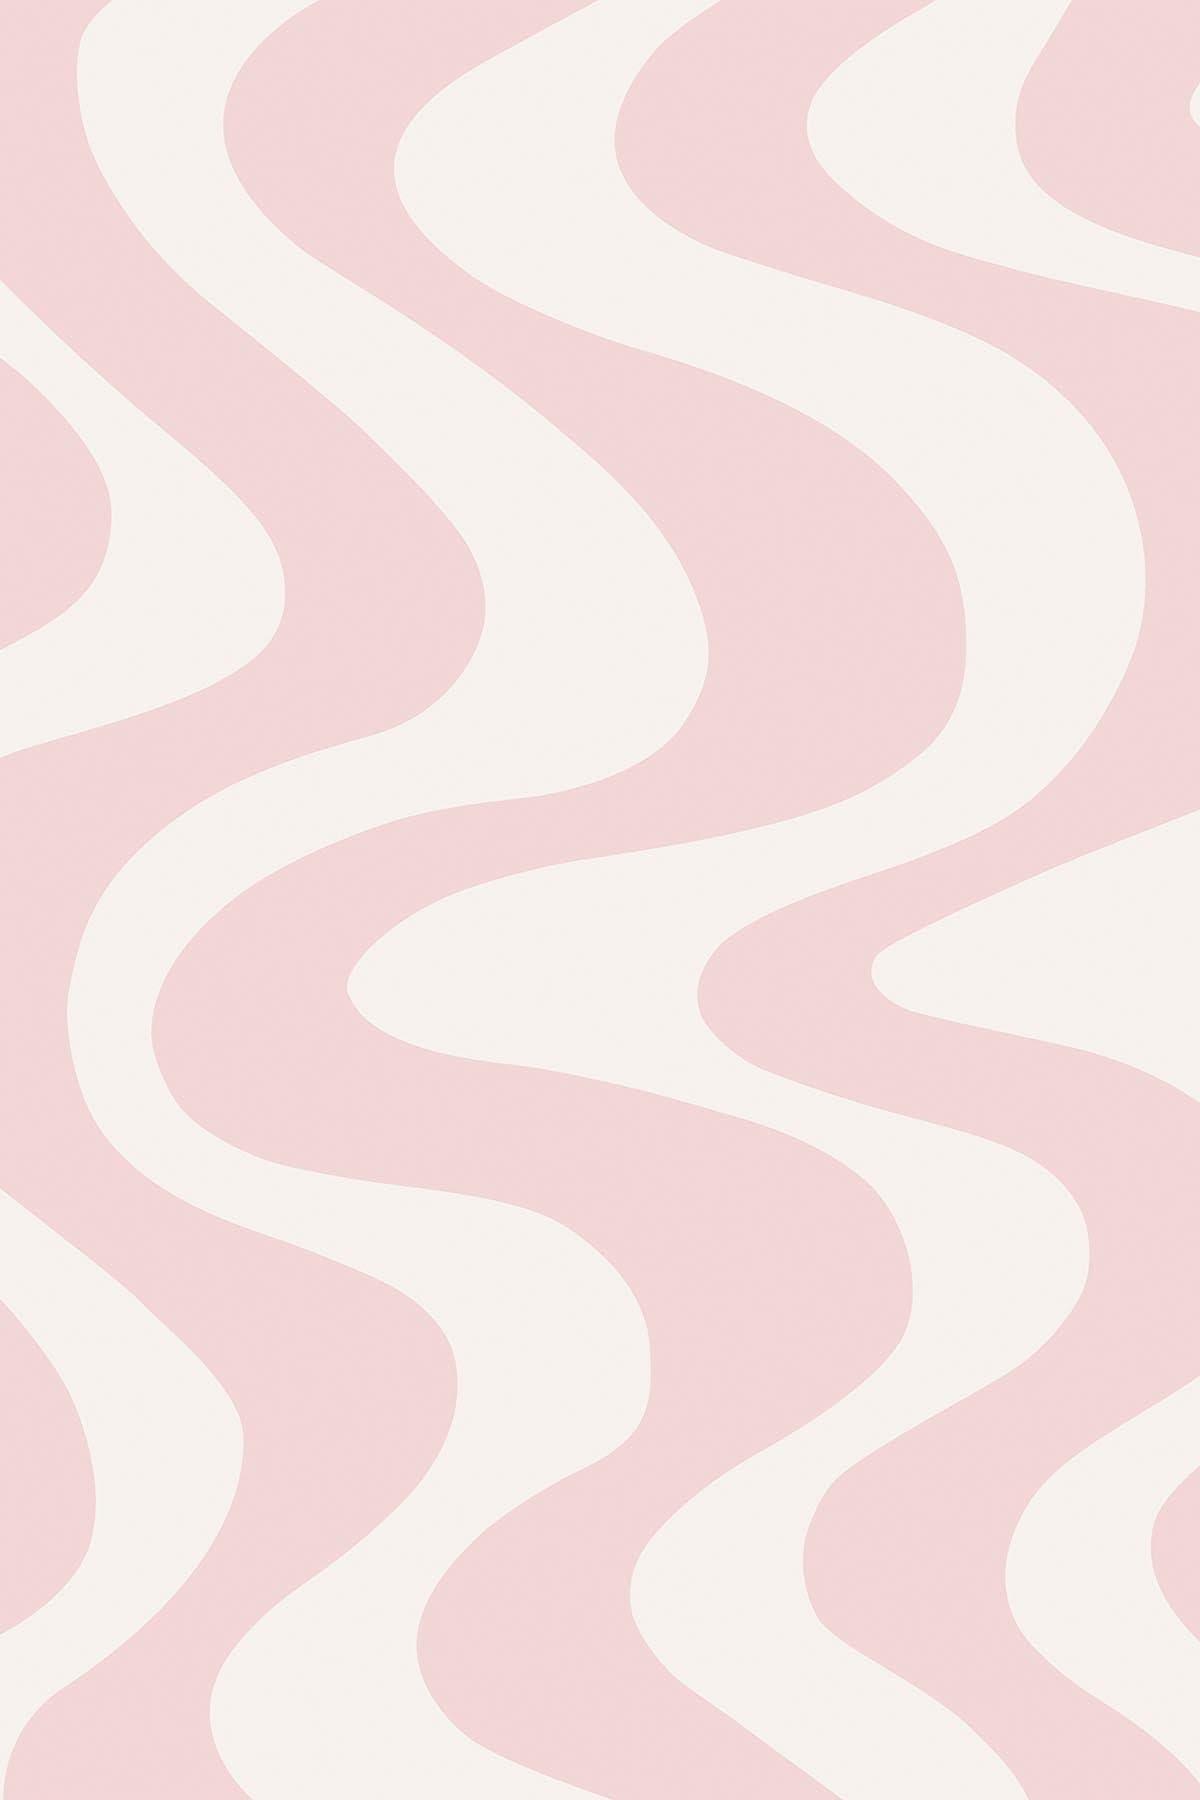 Curvy Wallpaper | Pink Wallpaper | belarteSTUDIO.